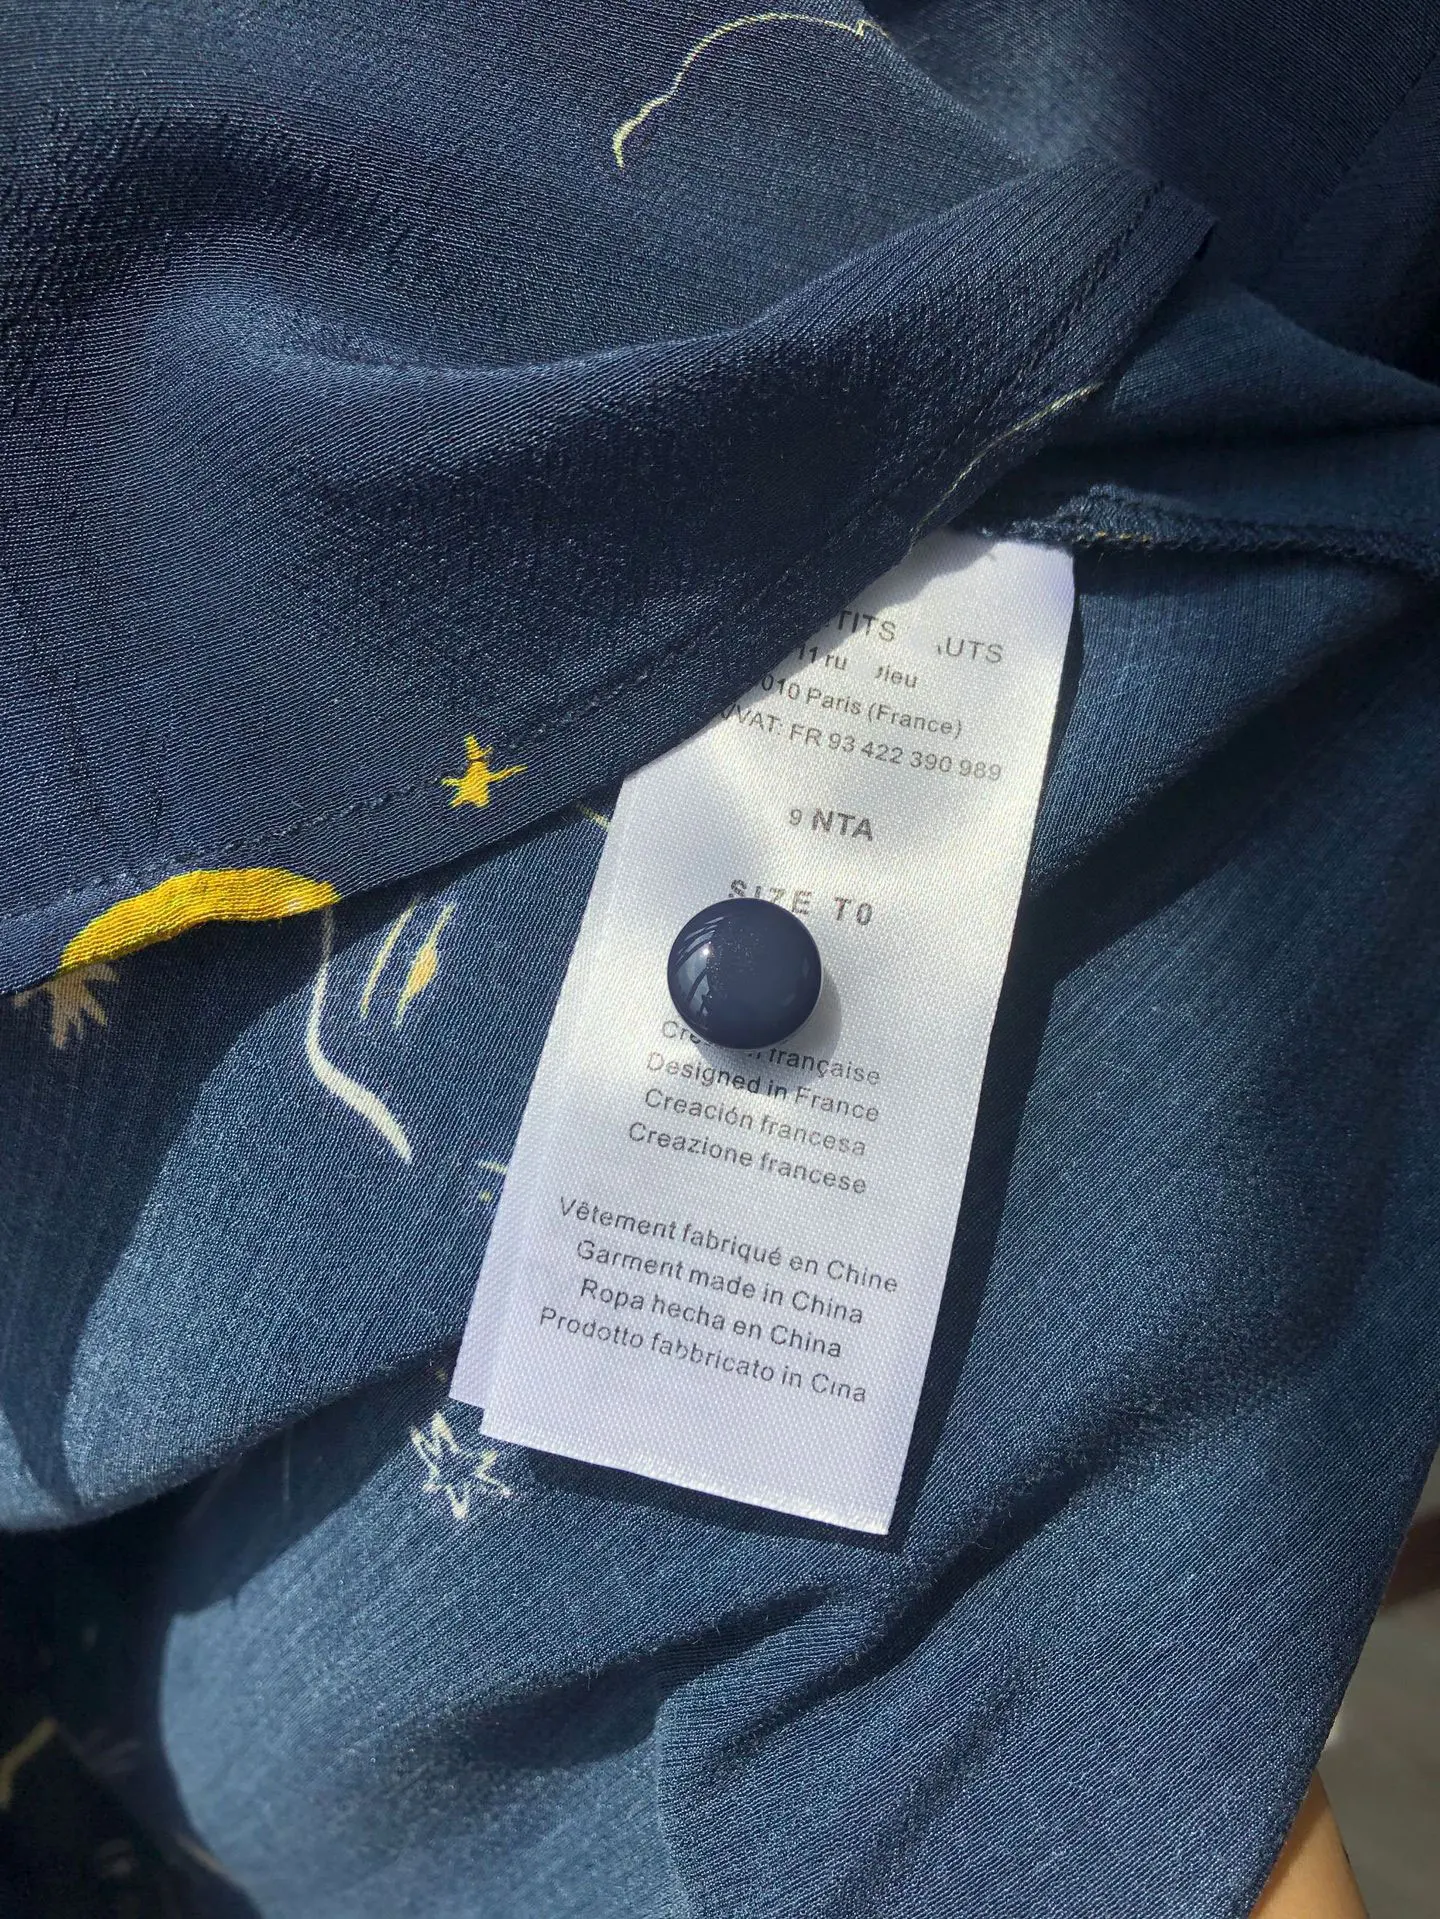 Женская рубашка Звездная Луна рубашка французский стиль Осенняя мода Звездная Луна принт Тонкий костюм рубашка с воротником